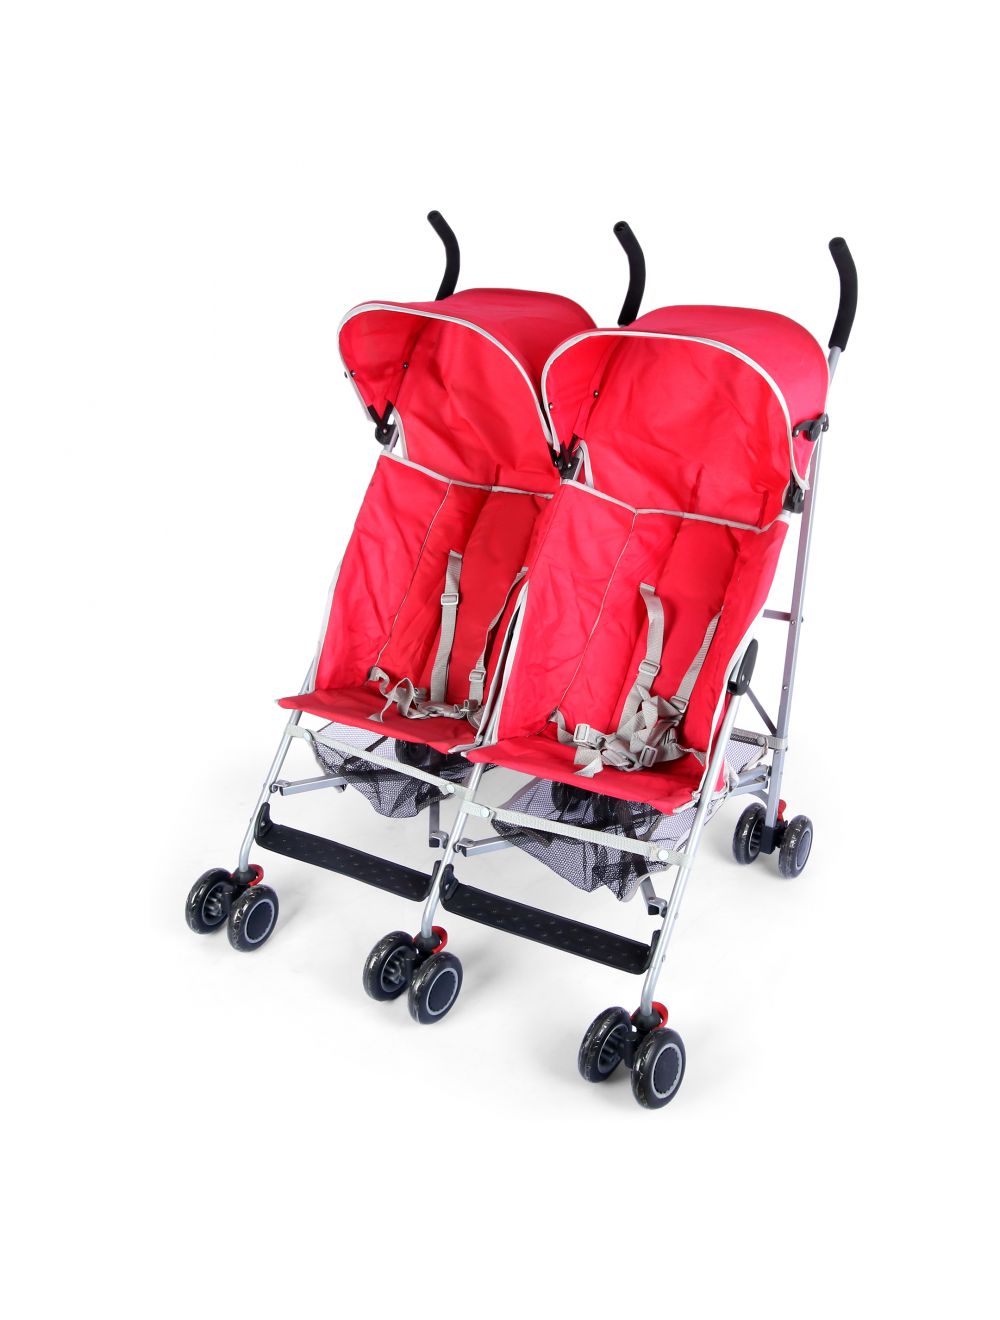 Joymaker Twin Stroller Red